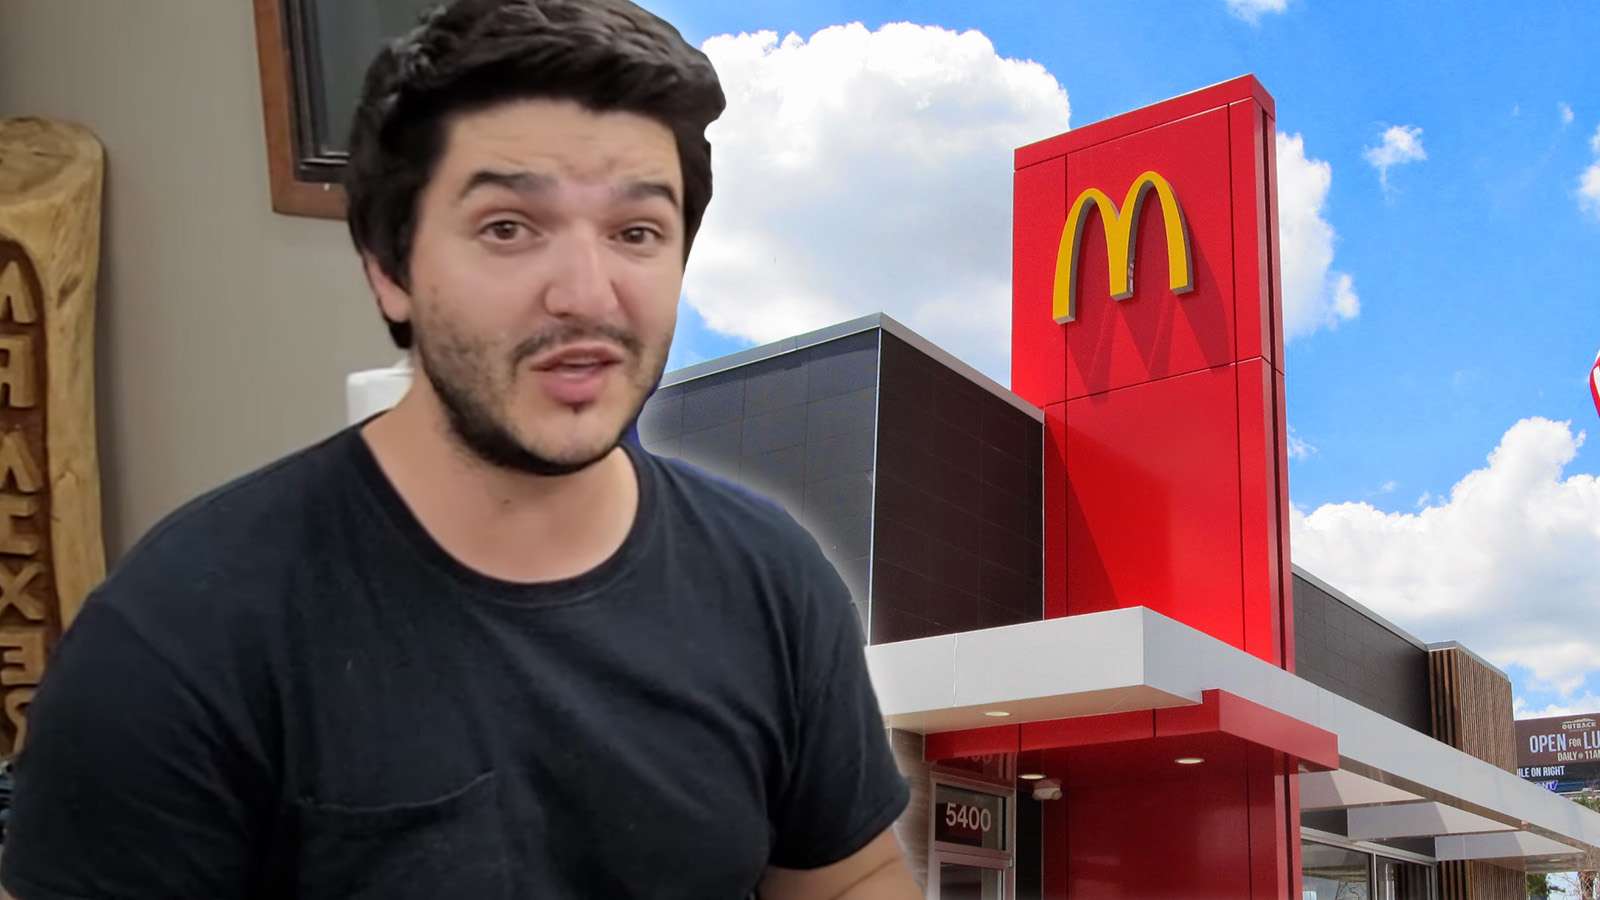 MrMixer McDonalds Trip saved his life